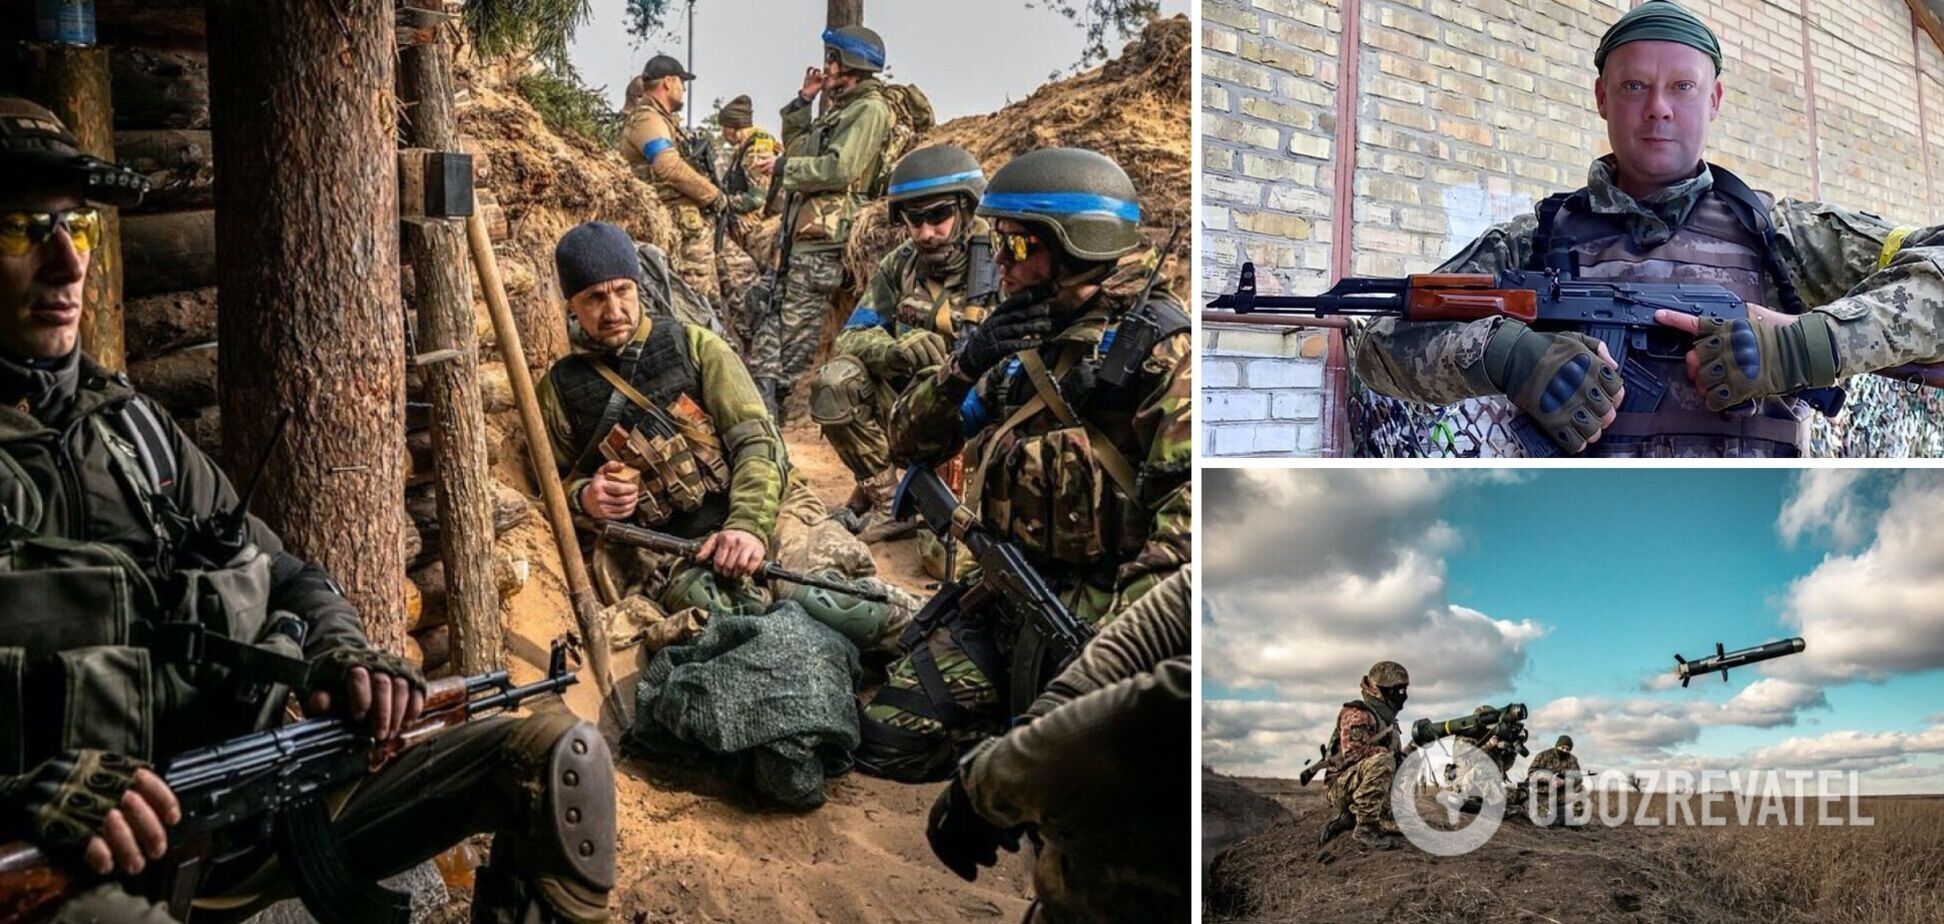 Сазонов: Запад готовил Украину к партизанской войне, но сейчас все по-другому. Интервью